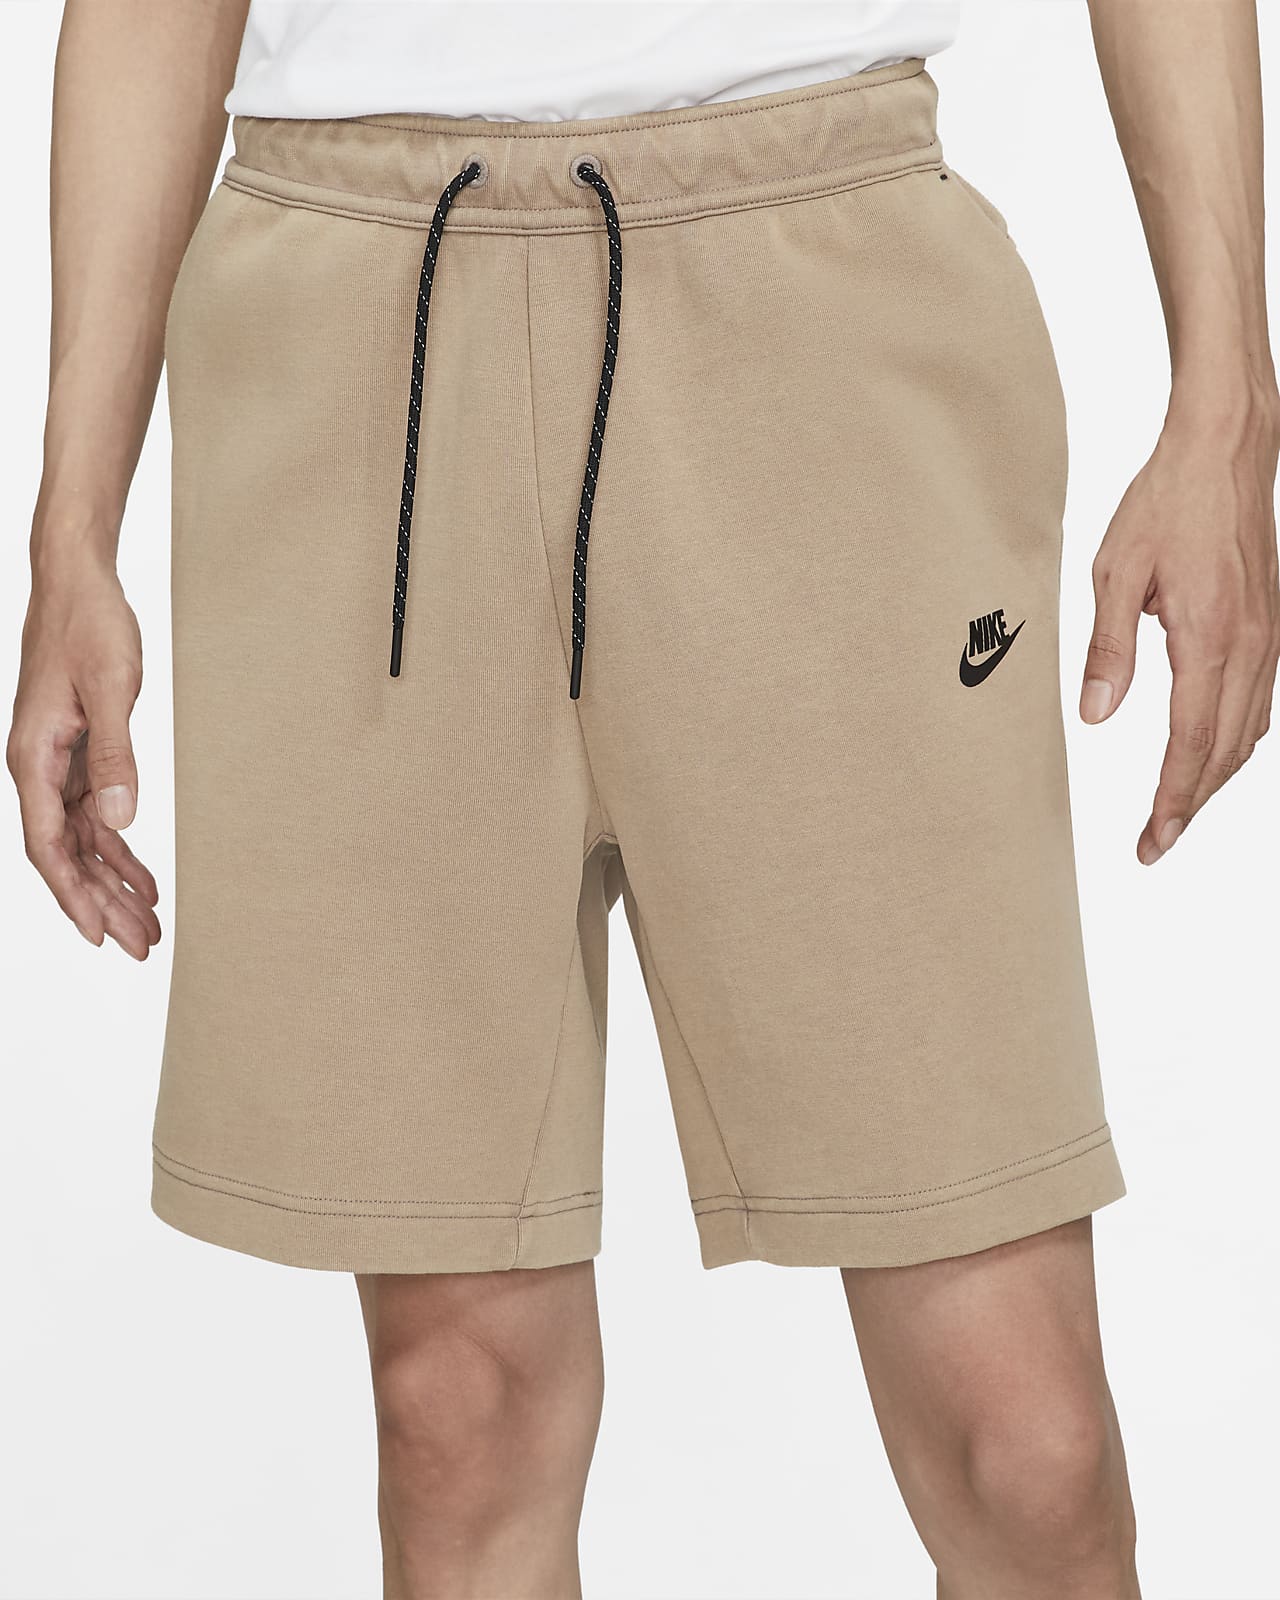 men's shorts nike sportswear tech fleece